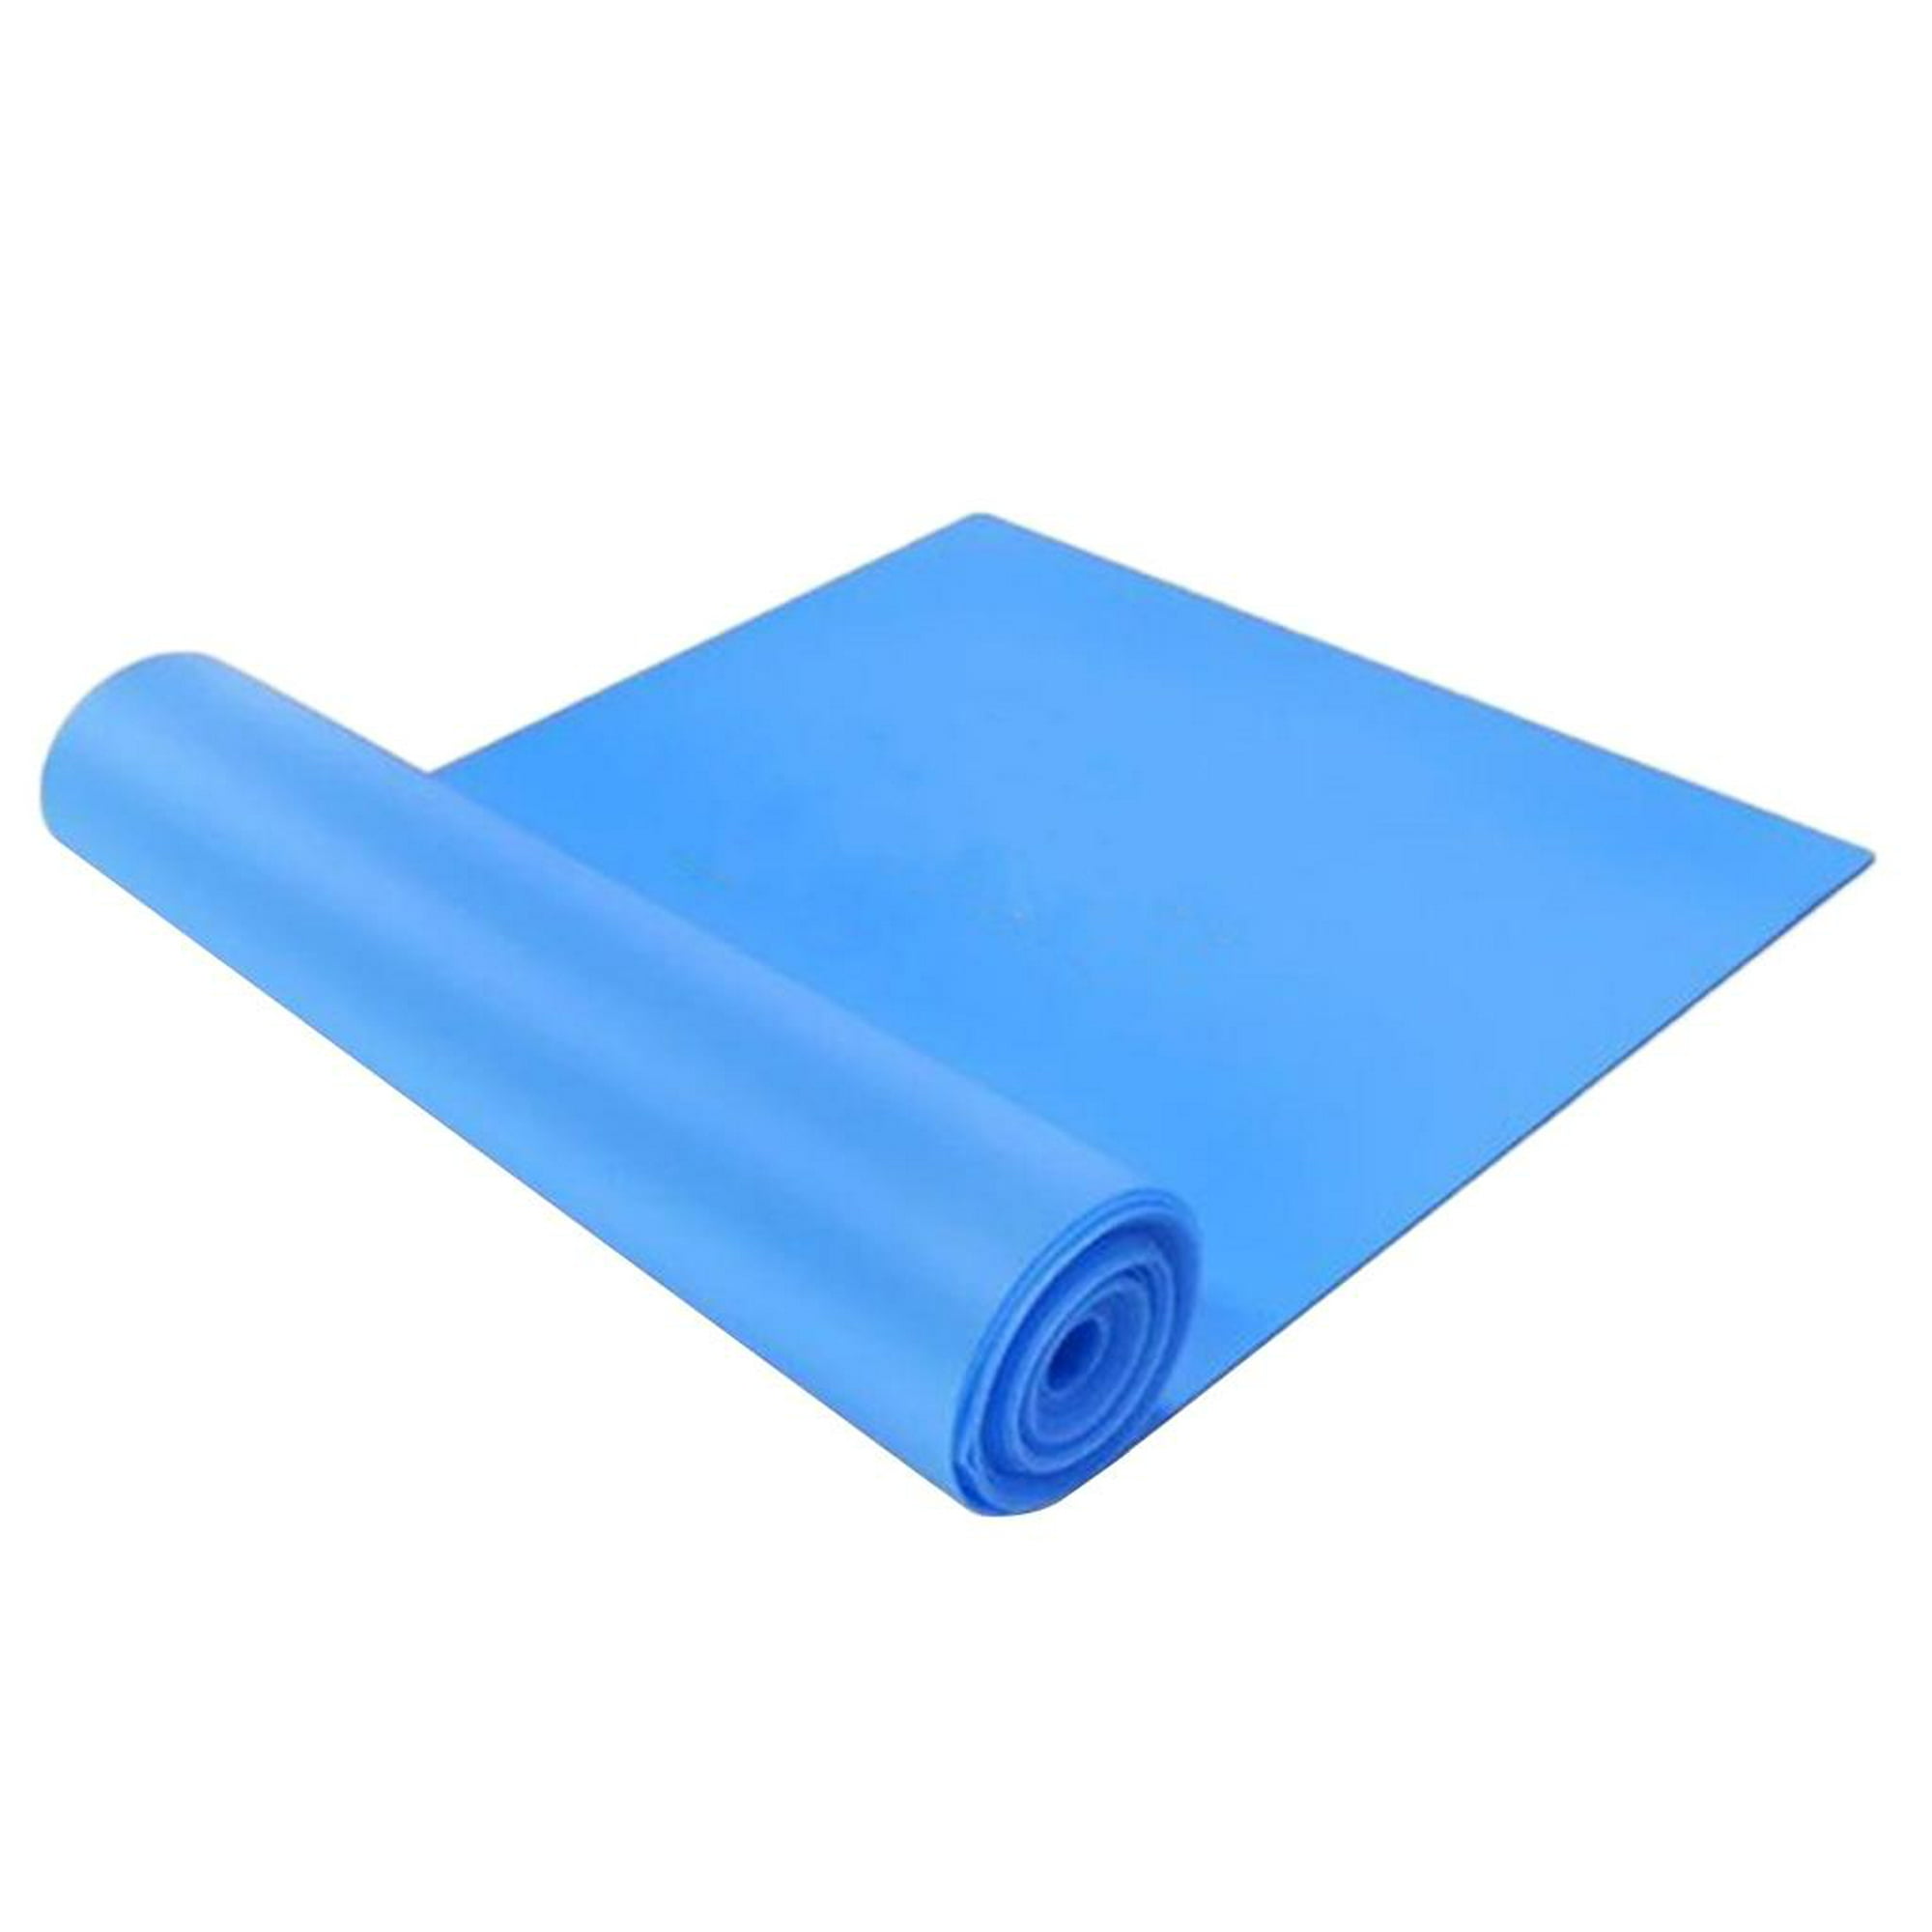 Esterilla de yoga antideslizante con correa de transporte Cojín de apoyo  para el codo Fitness de alta densidad Grueso 0.8cm Púrpura kusrkot  Almohadilla de yoga